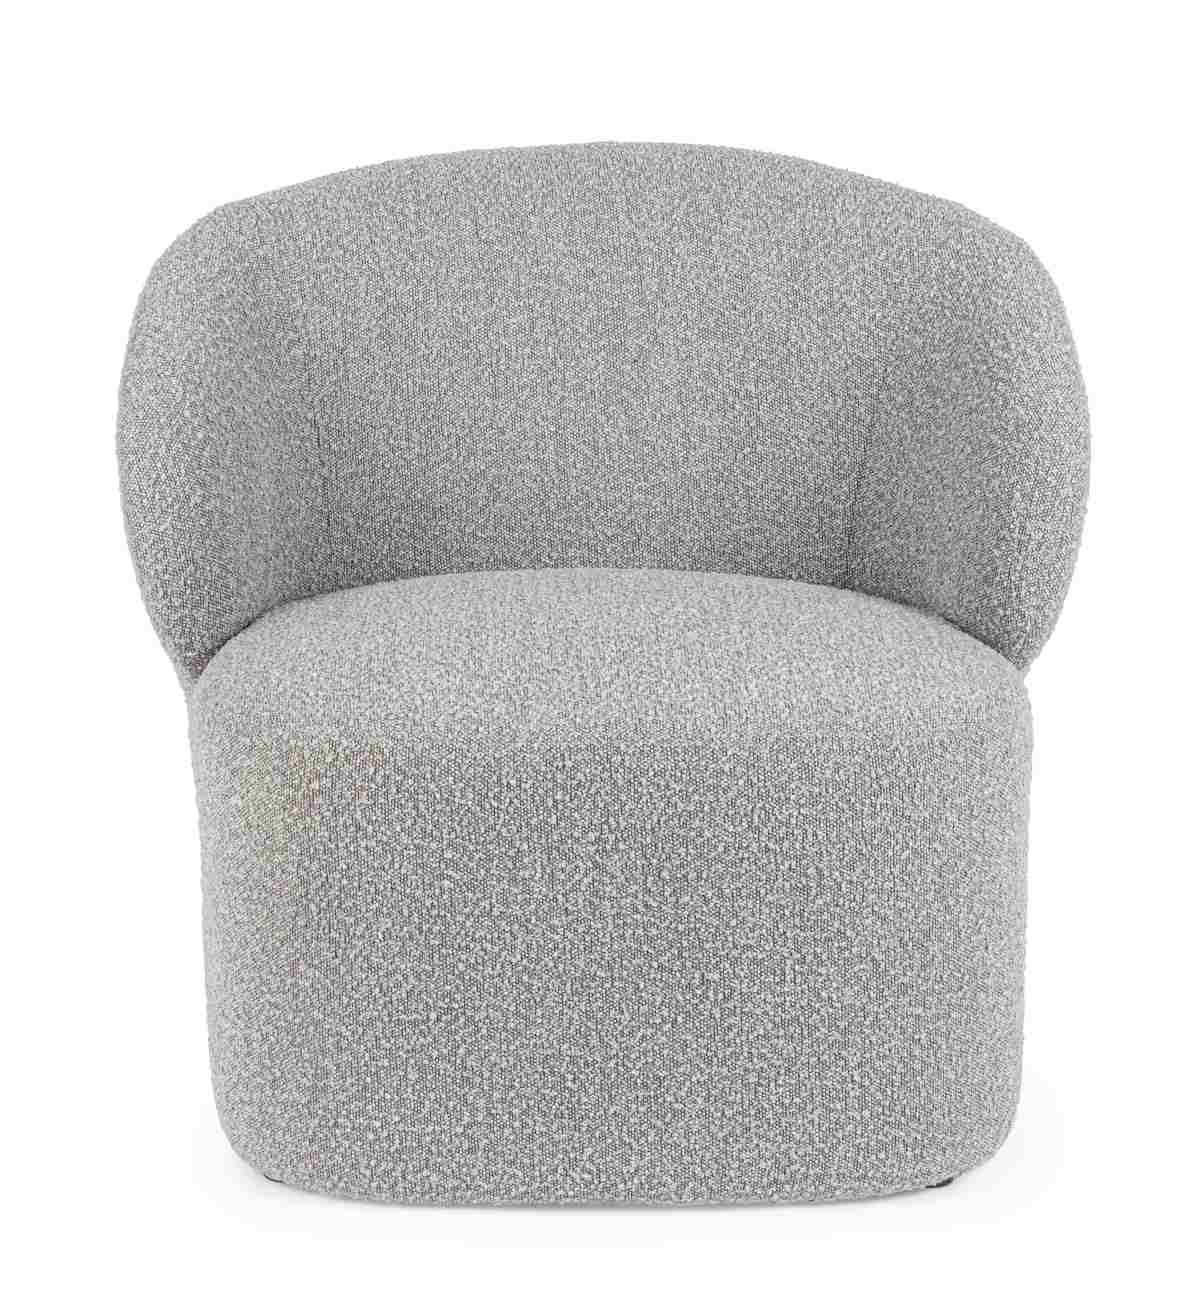 Der Sessel Babila überzeugt mit seinem modernen Stil. Gefertigt wurde er aus Boucle-Stoff, welcher einen grauen Farbton besitzt. Der Sessel besitzt eine Sitzhöhe von 44 cm.